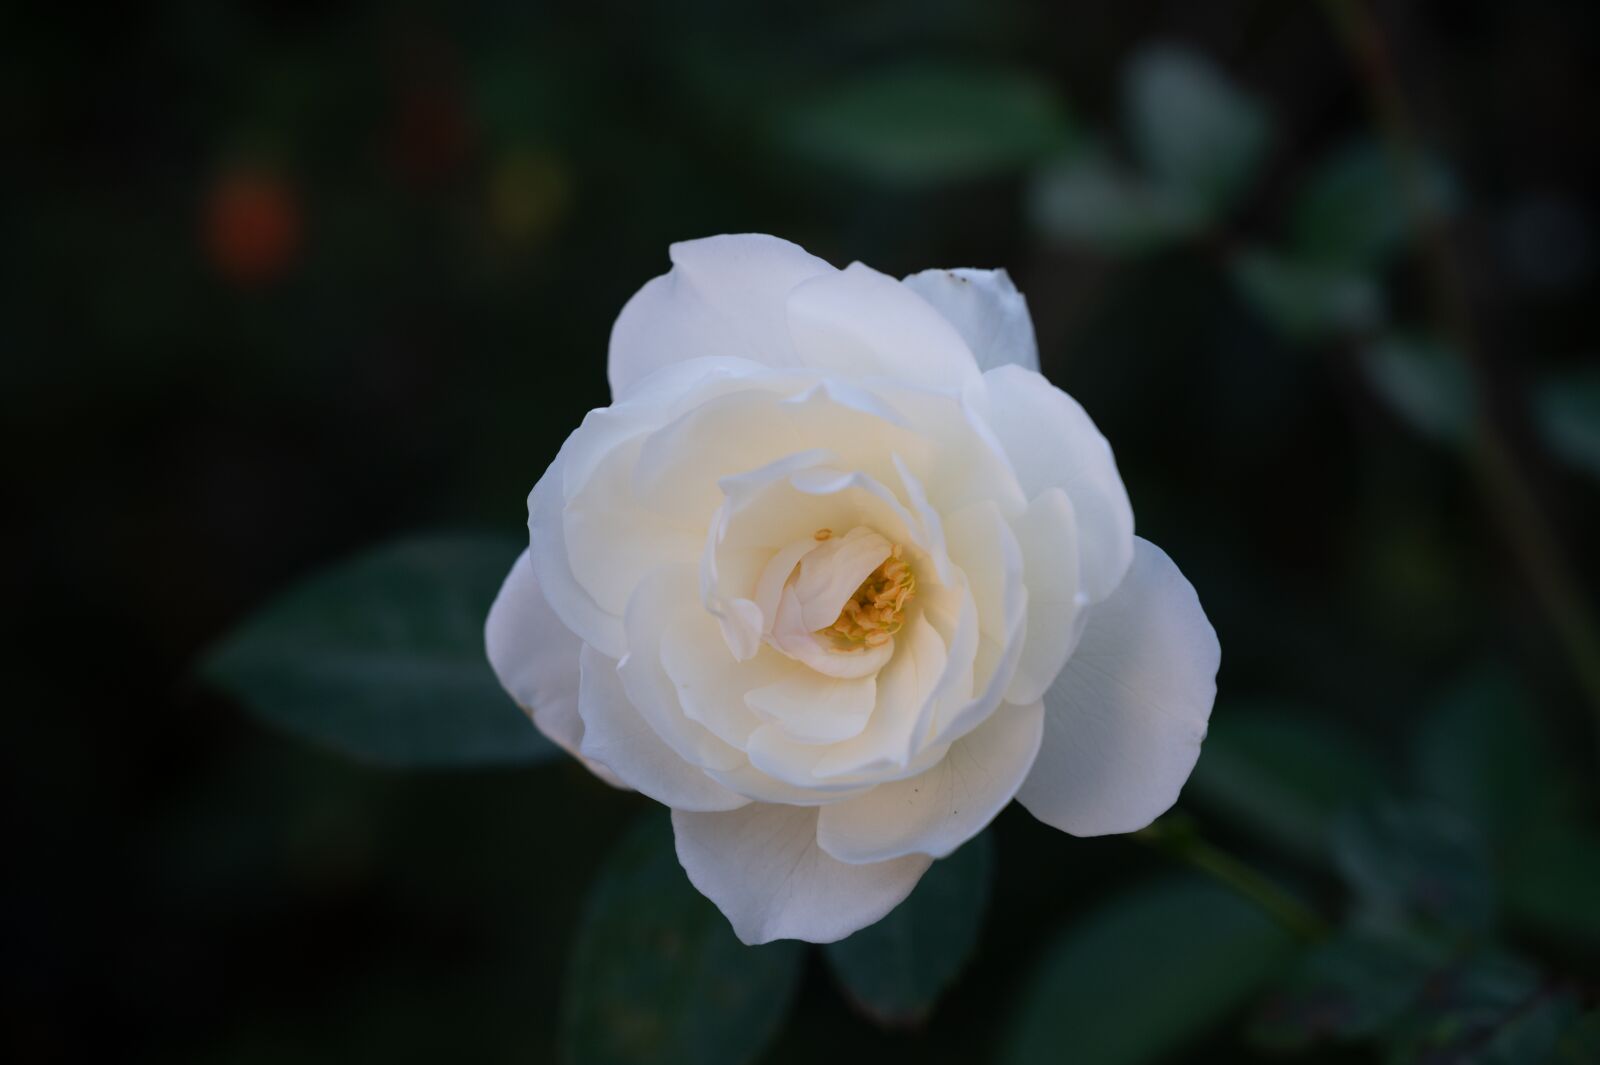 Nikon Z6 + Nikon Nikkor Z 24-70mm F4 S sample photo. Rose, white, bloom photography